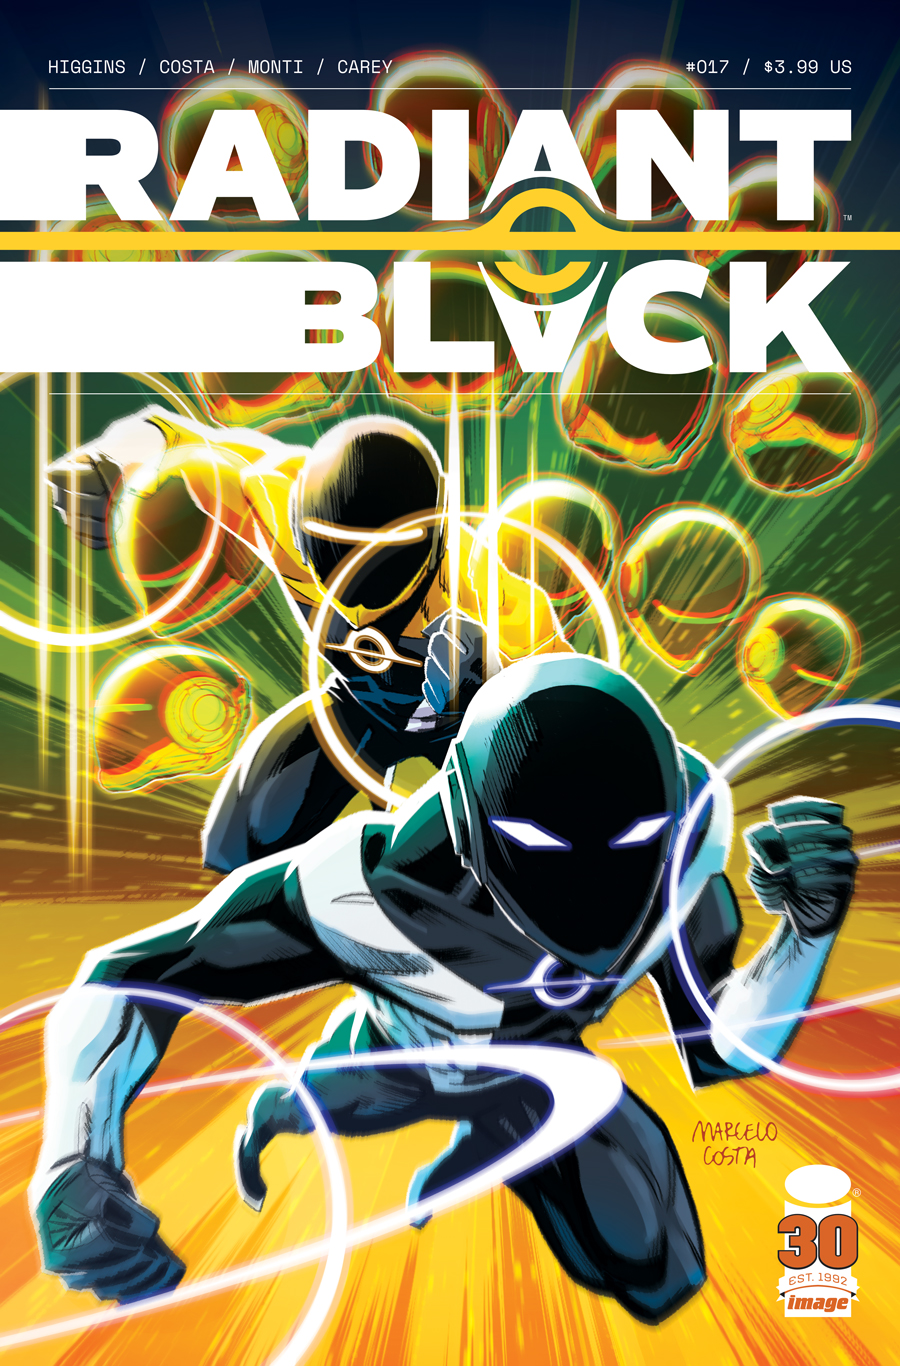 RADIANT BLACK #11 COVER A BURNETT VF/NM IMAGE HOHC 2021